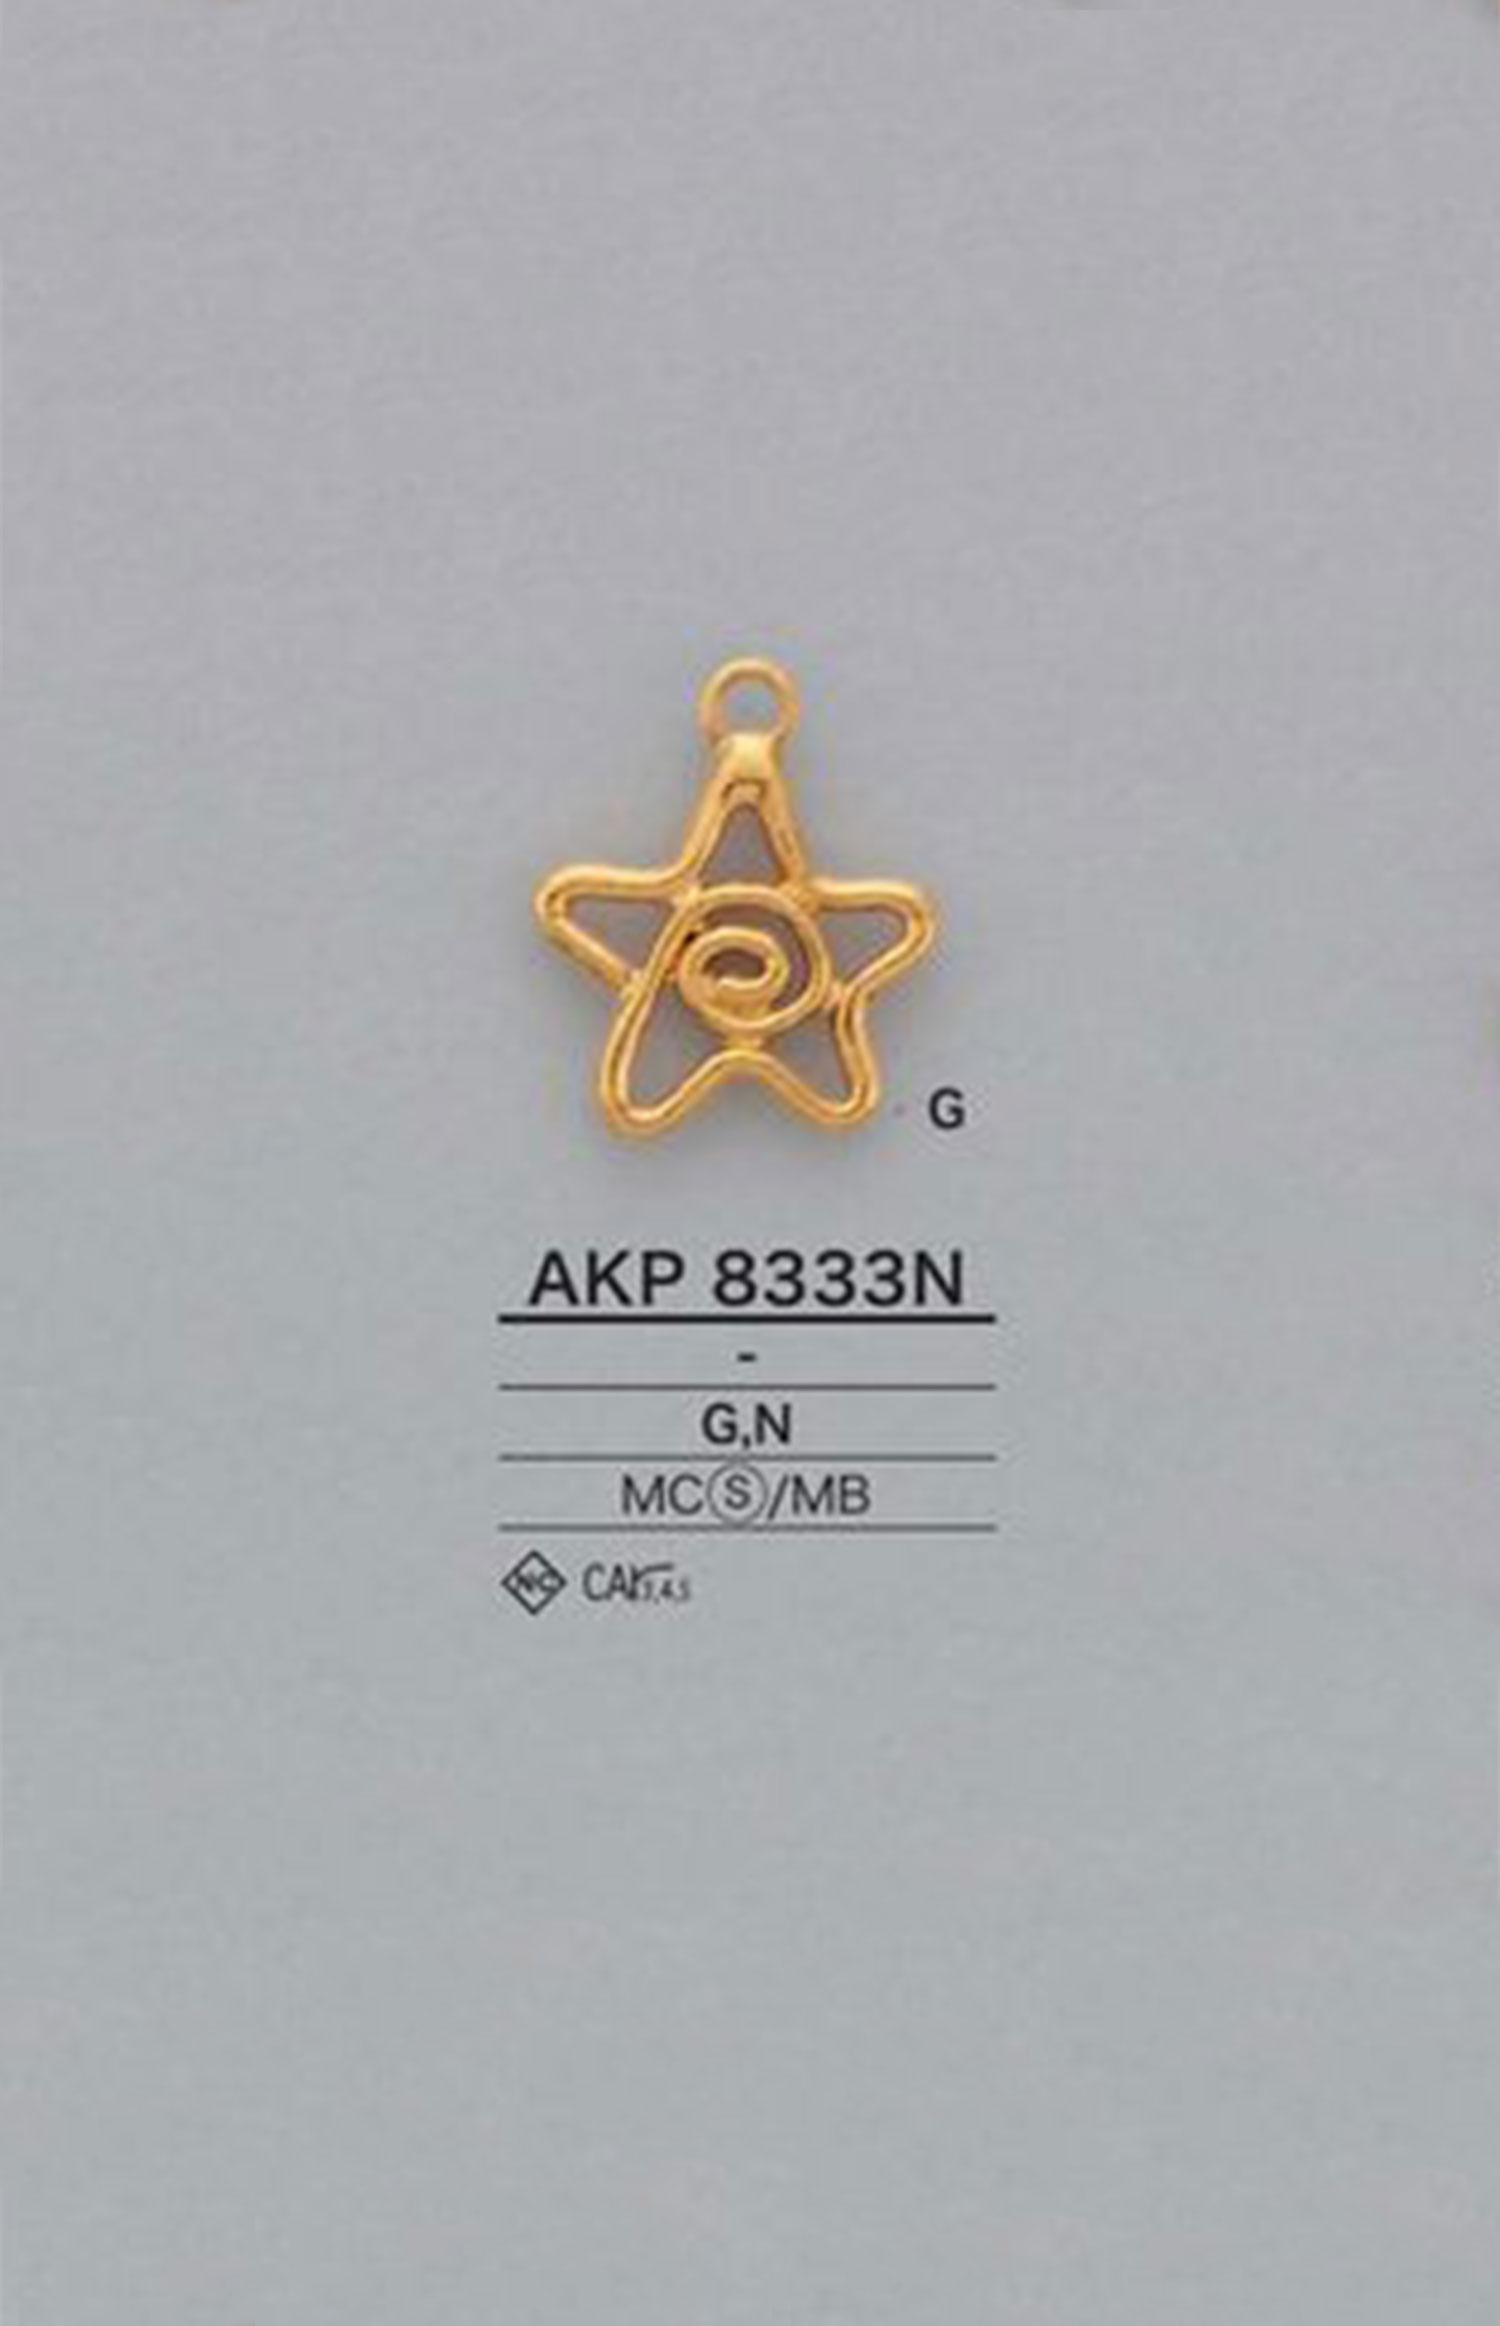 AKP8333N 星形拉链（拉头） 爱丽丝纽扣